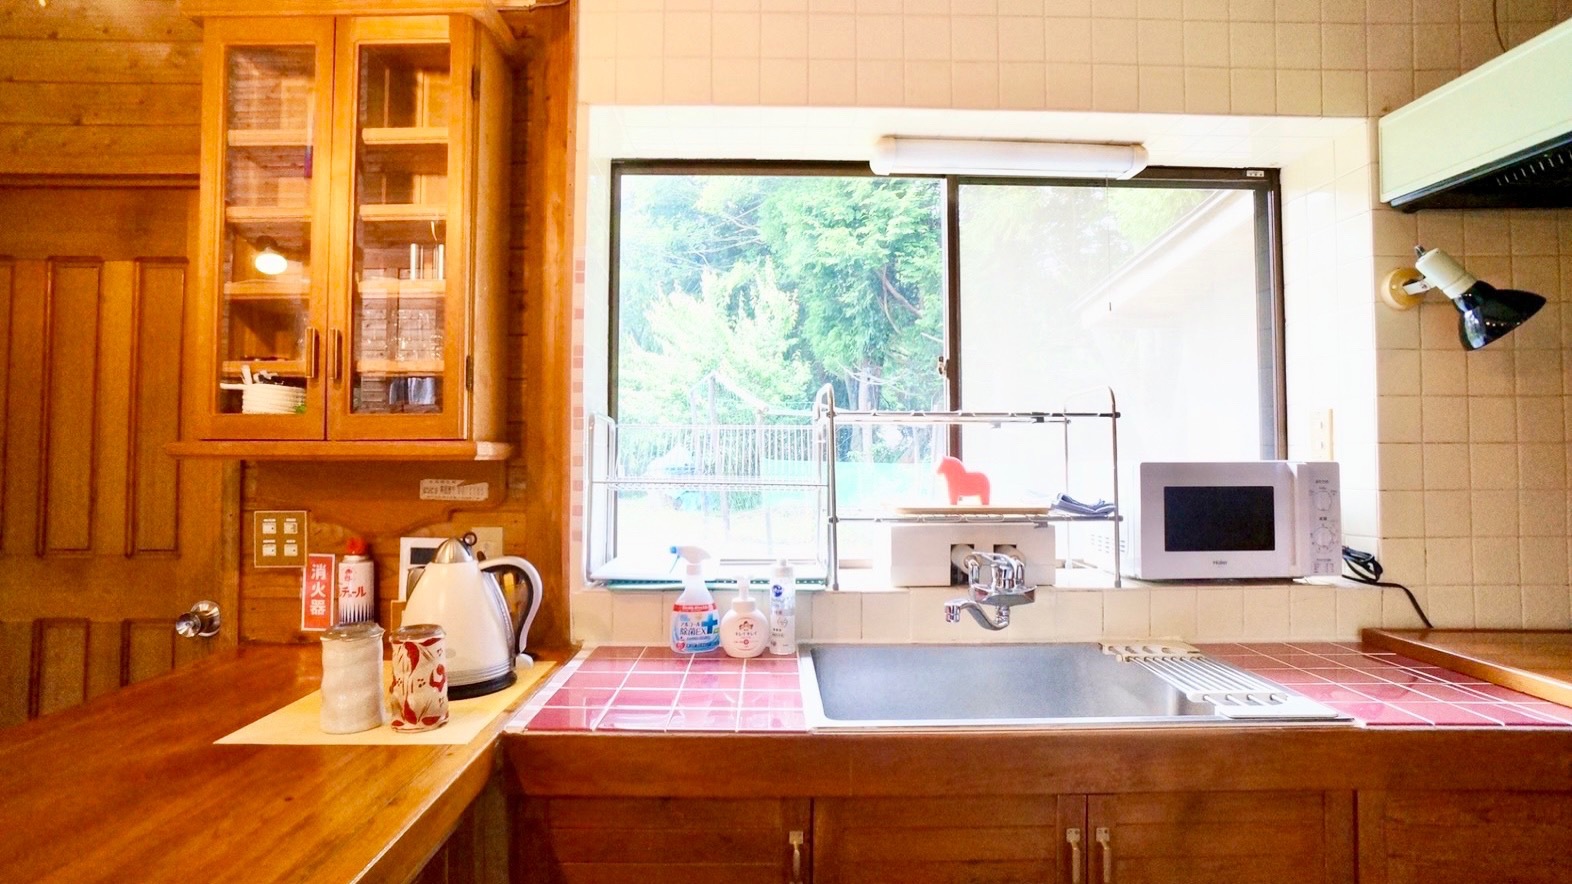 室内丨キッチンには調理器具、食器、冷凍・冷蔵庫を完備しています。